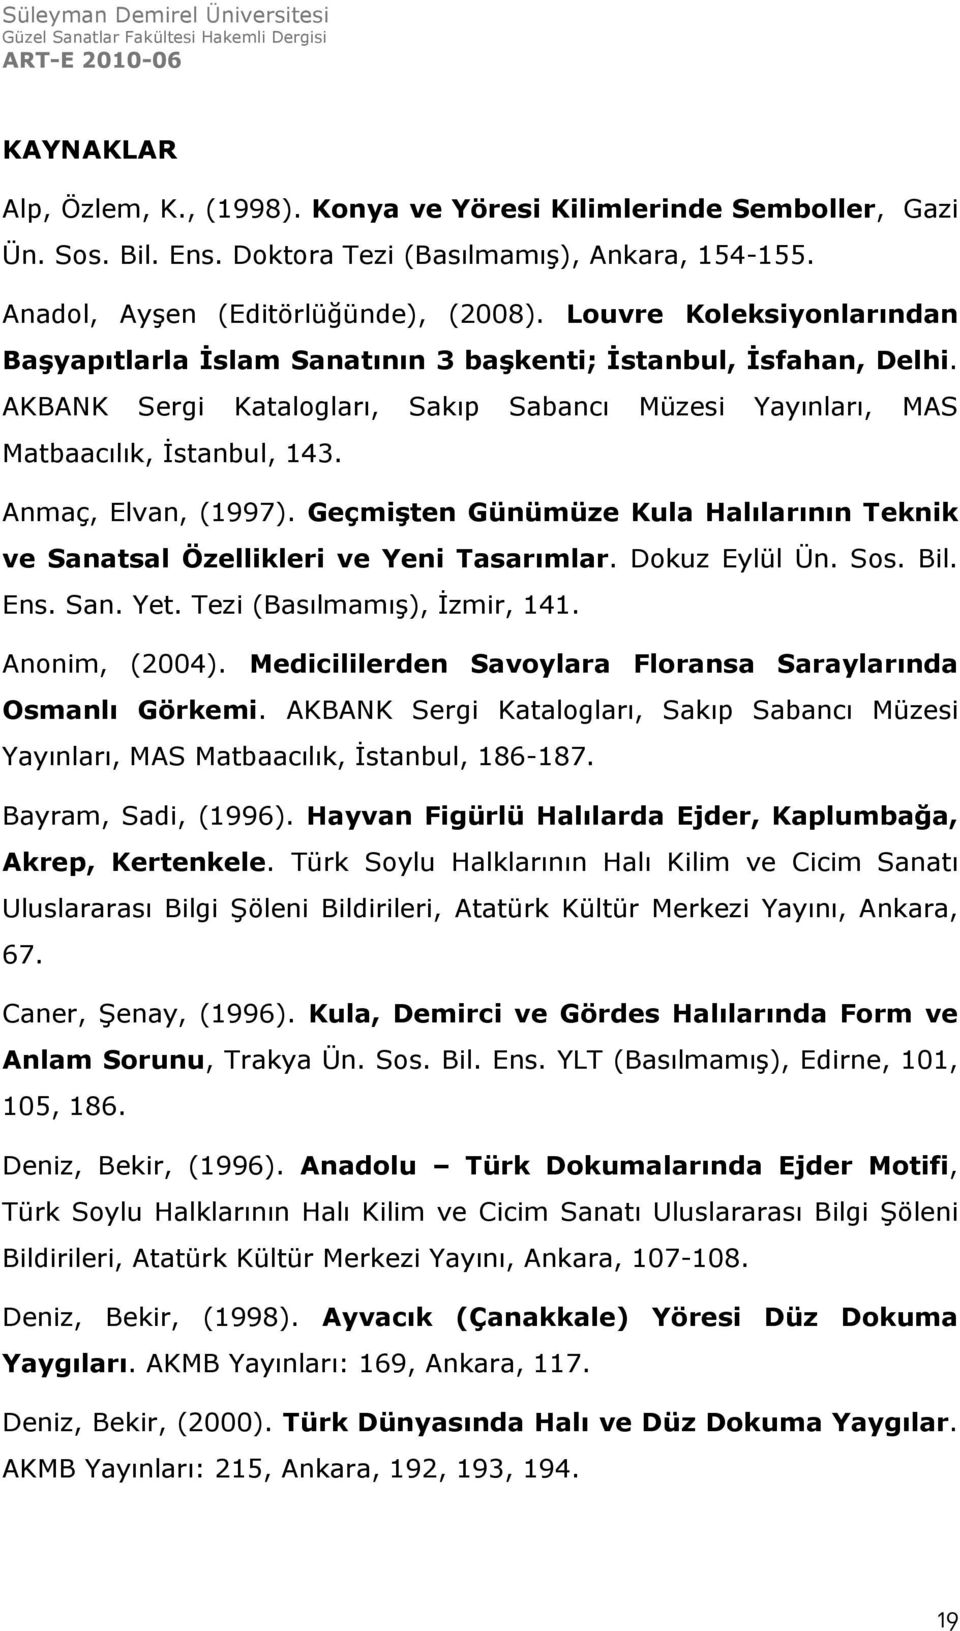 Anmaç, Elvan, (1997). Geçmişten Günümüze Kula Halılarının Teknik ve Sanatsal Özellikleri ve Yeni Tasarımlar. Dokuz Eylül Ün. Sos. Bil. Ens. San. Yet. Tezi (Basılmamış), İzmir, 141. Anonim, (2004).